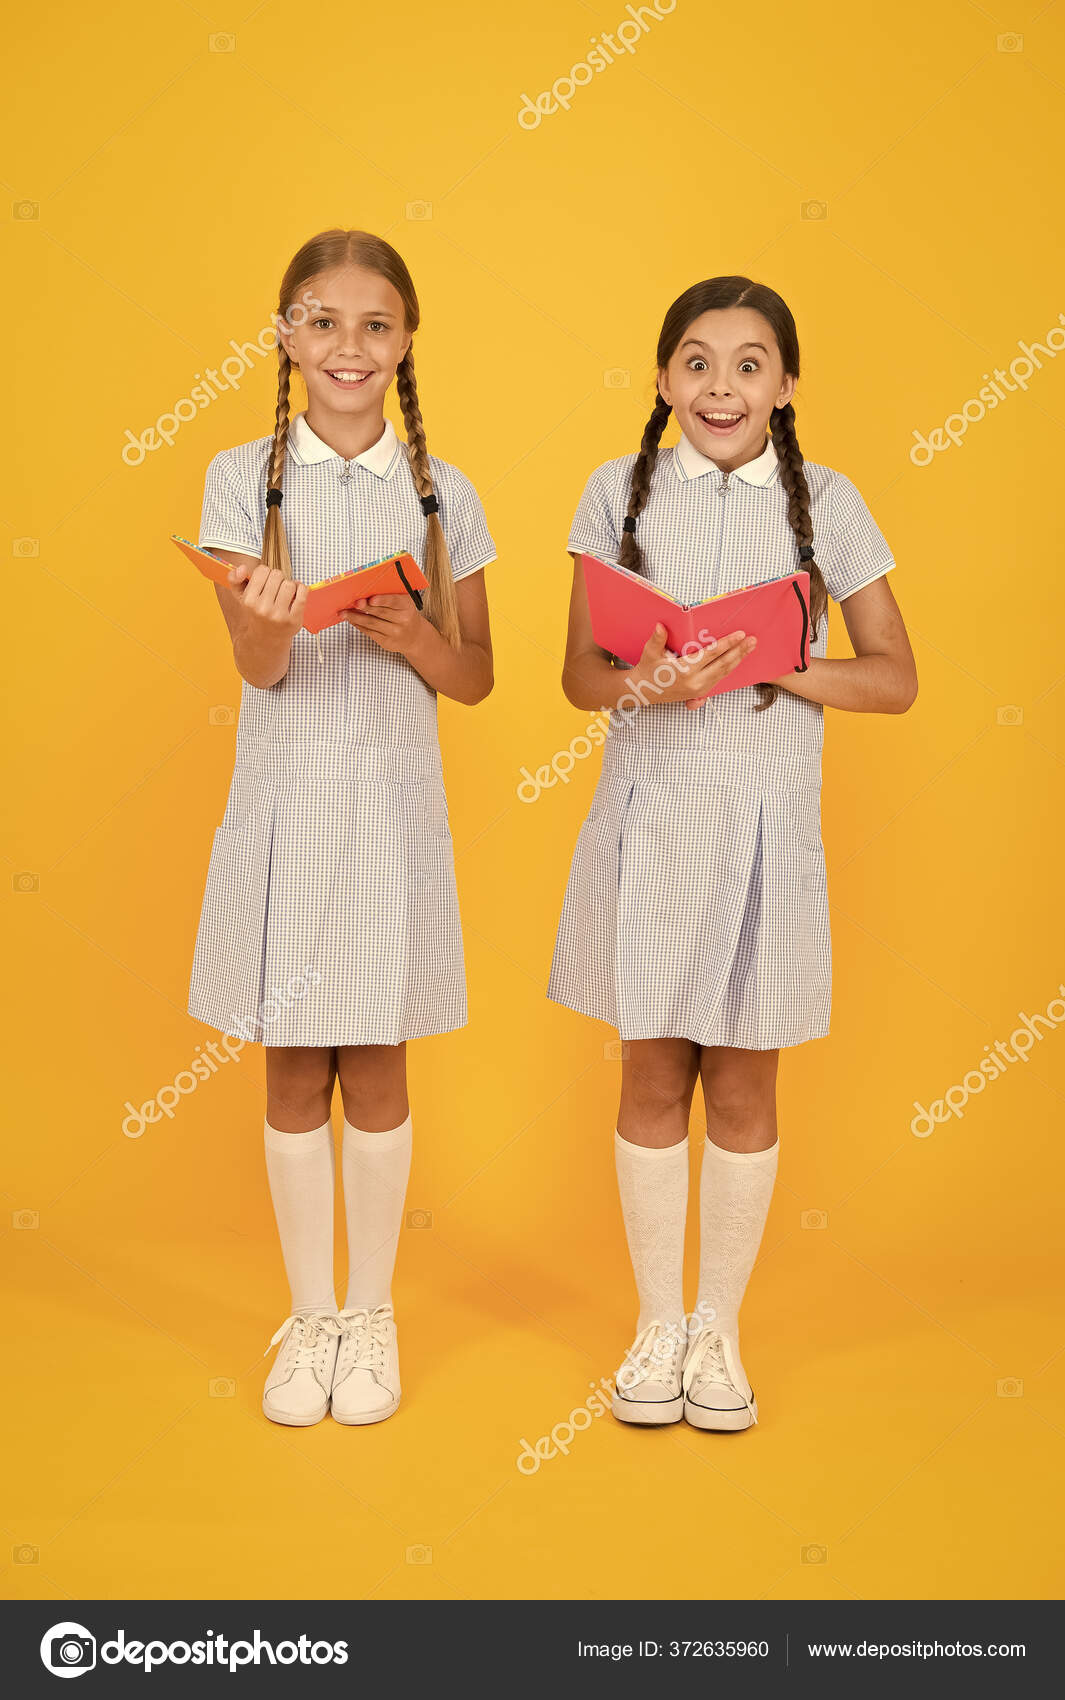 Tomando notas. las niñas pequeñas aman la literatura. la escuela. amigos felices en uniforme retro.